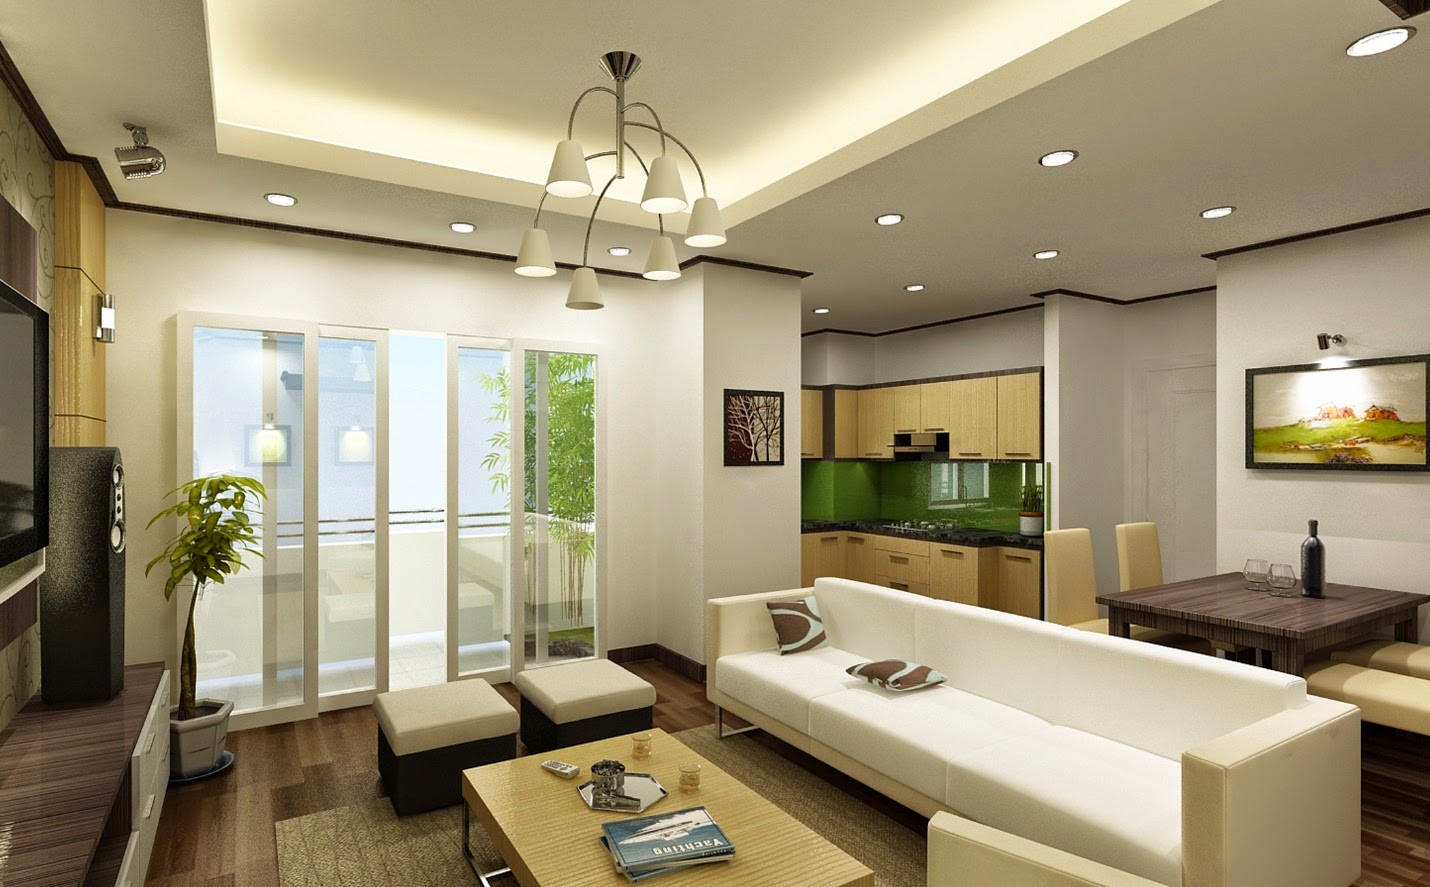 Cho thuê căn hộ chung cư 3 phòng ngủ Vinhomes Ocean Park 3 Hưng Yên, DT 90m2, view công viên nội khu